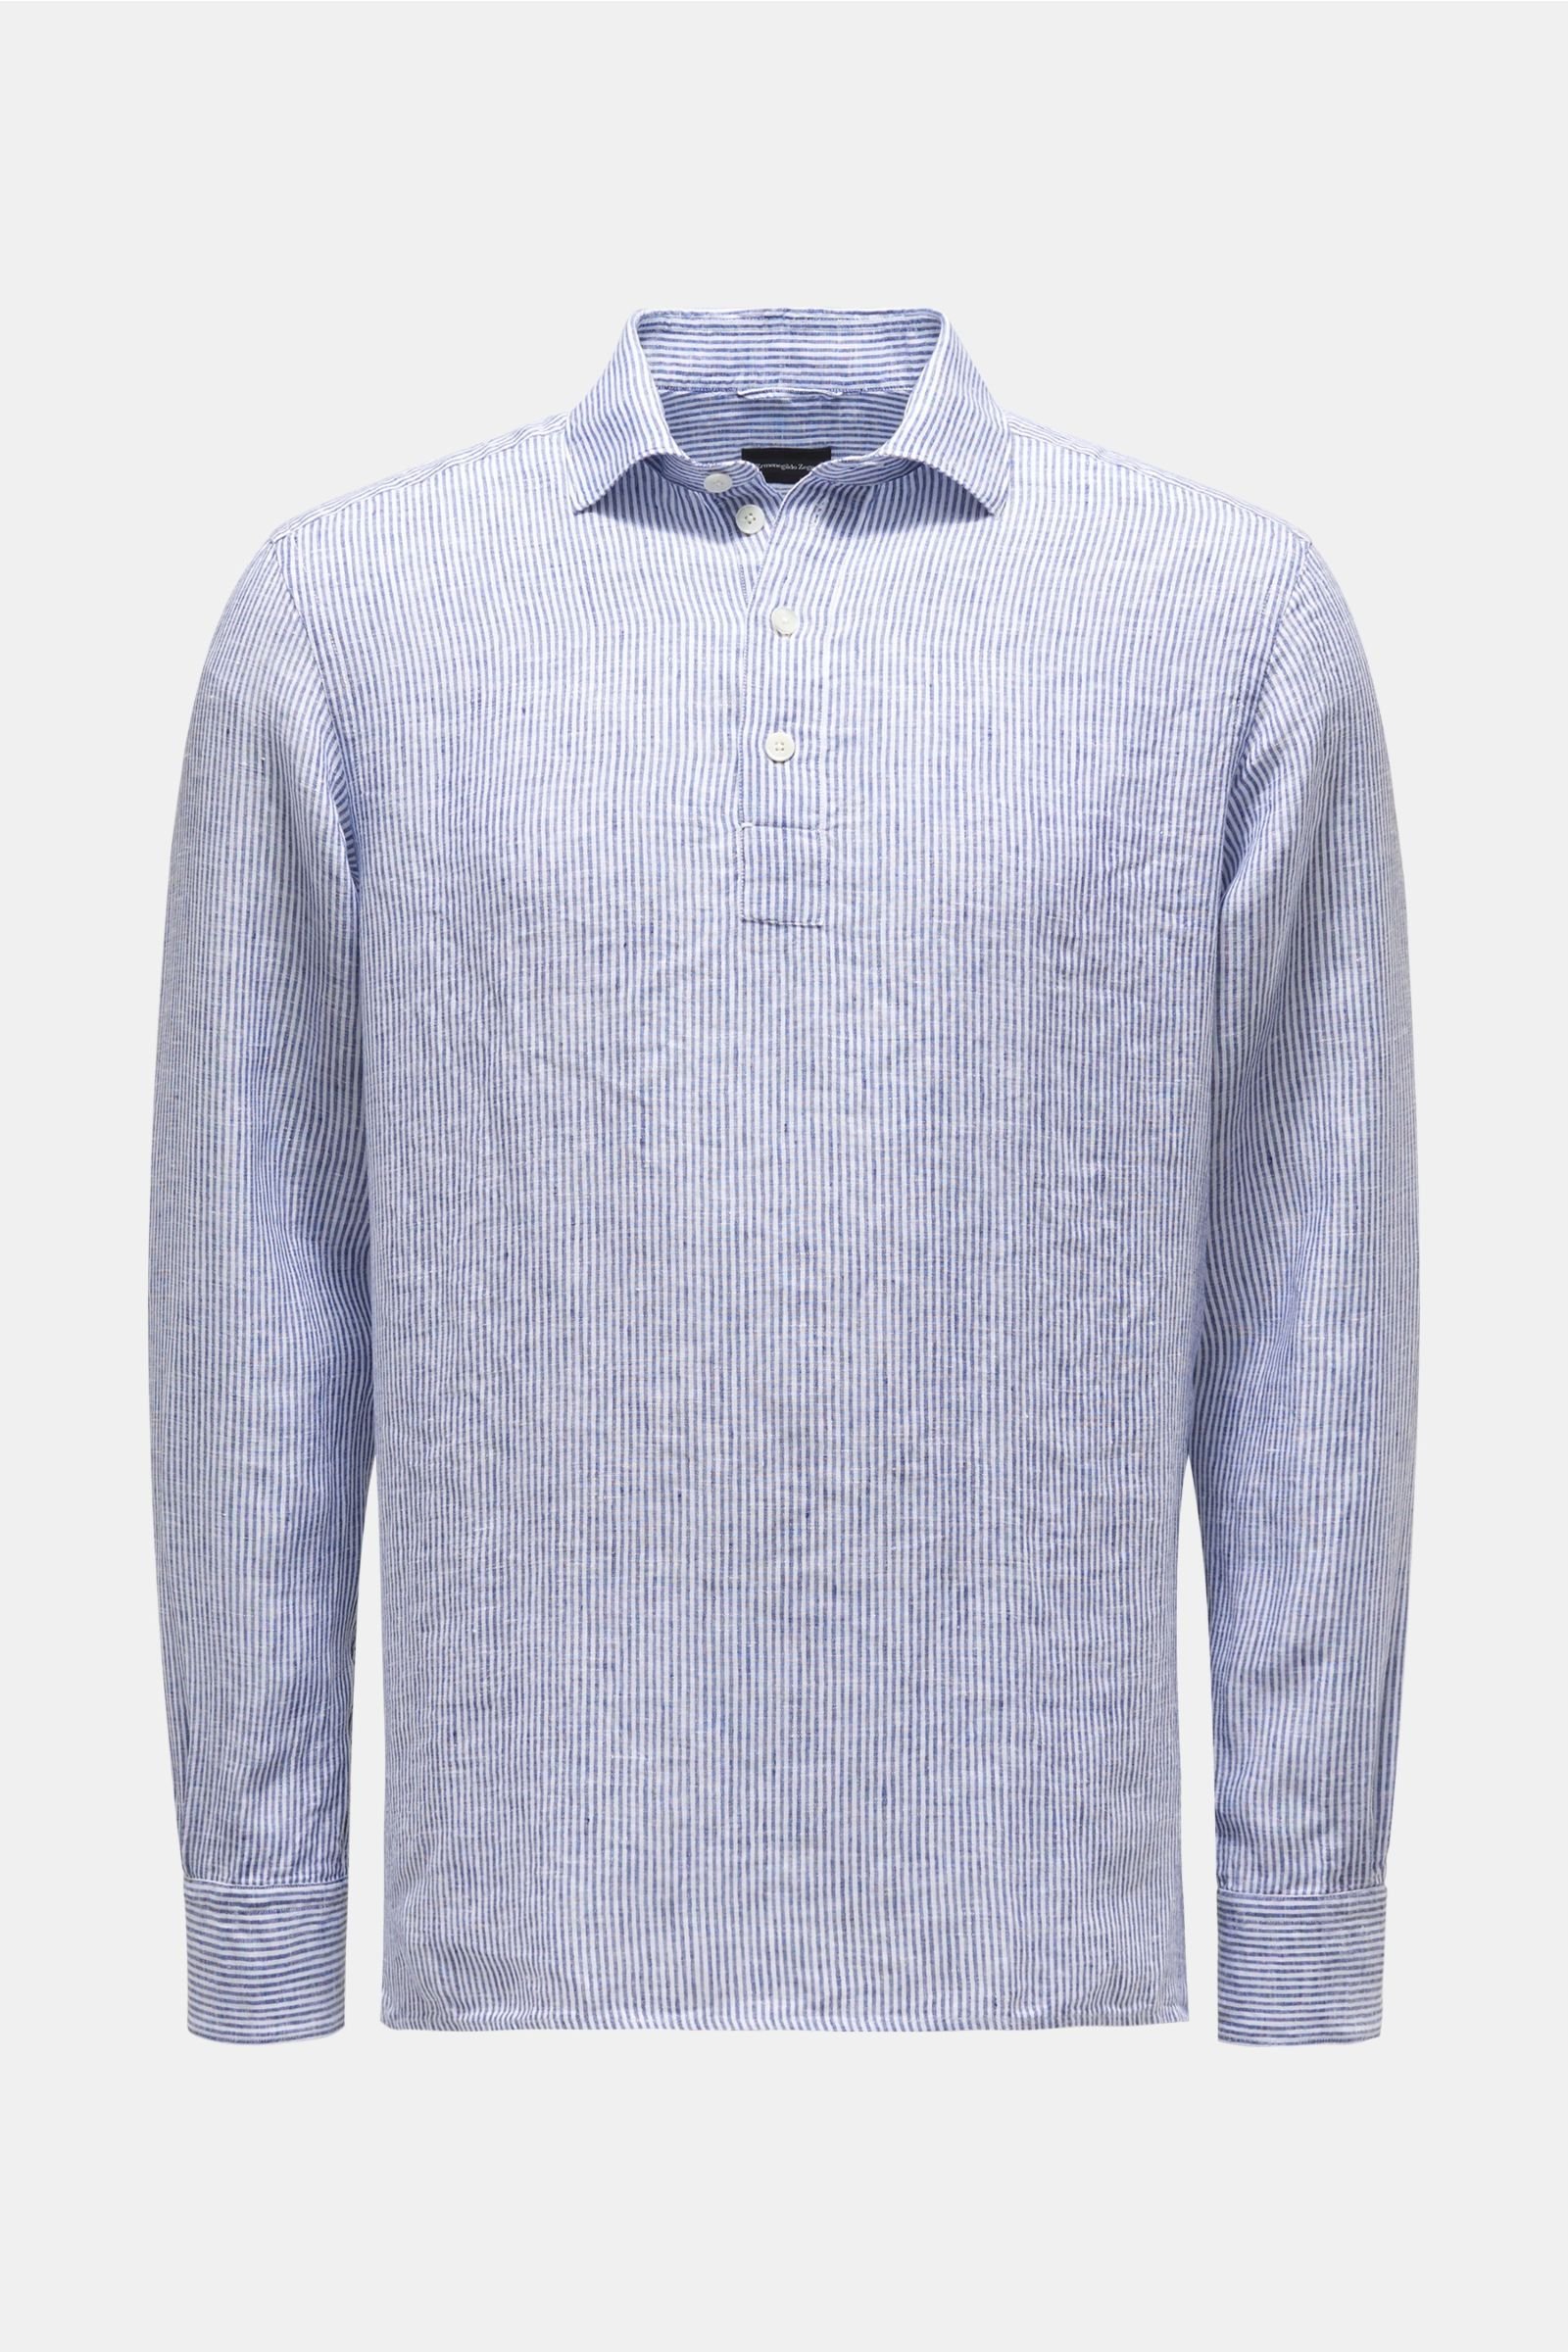 Leinen-Popover-Hemd graublau/weiß gestreift